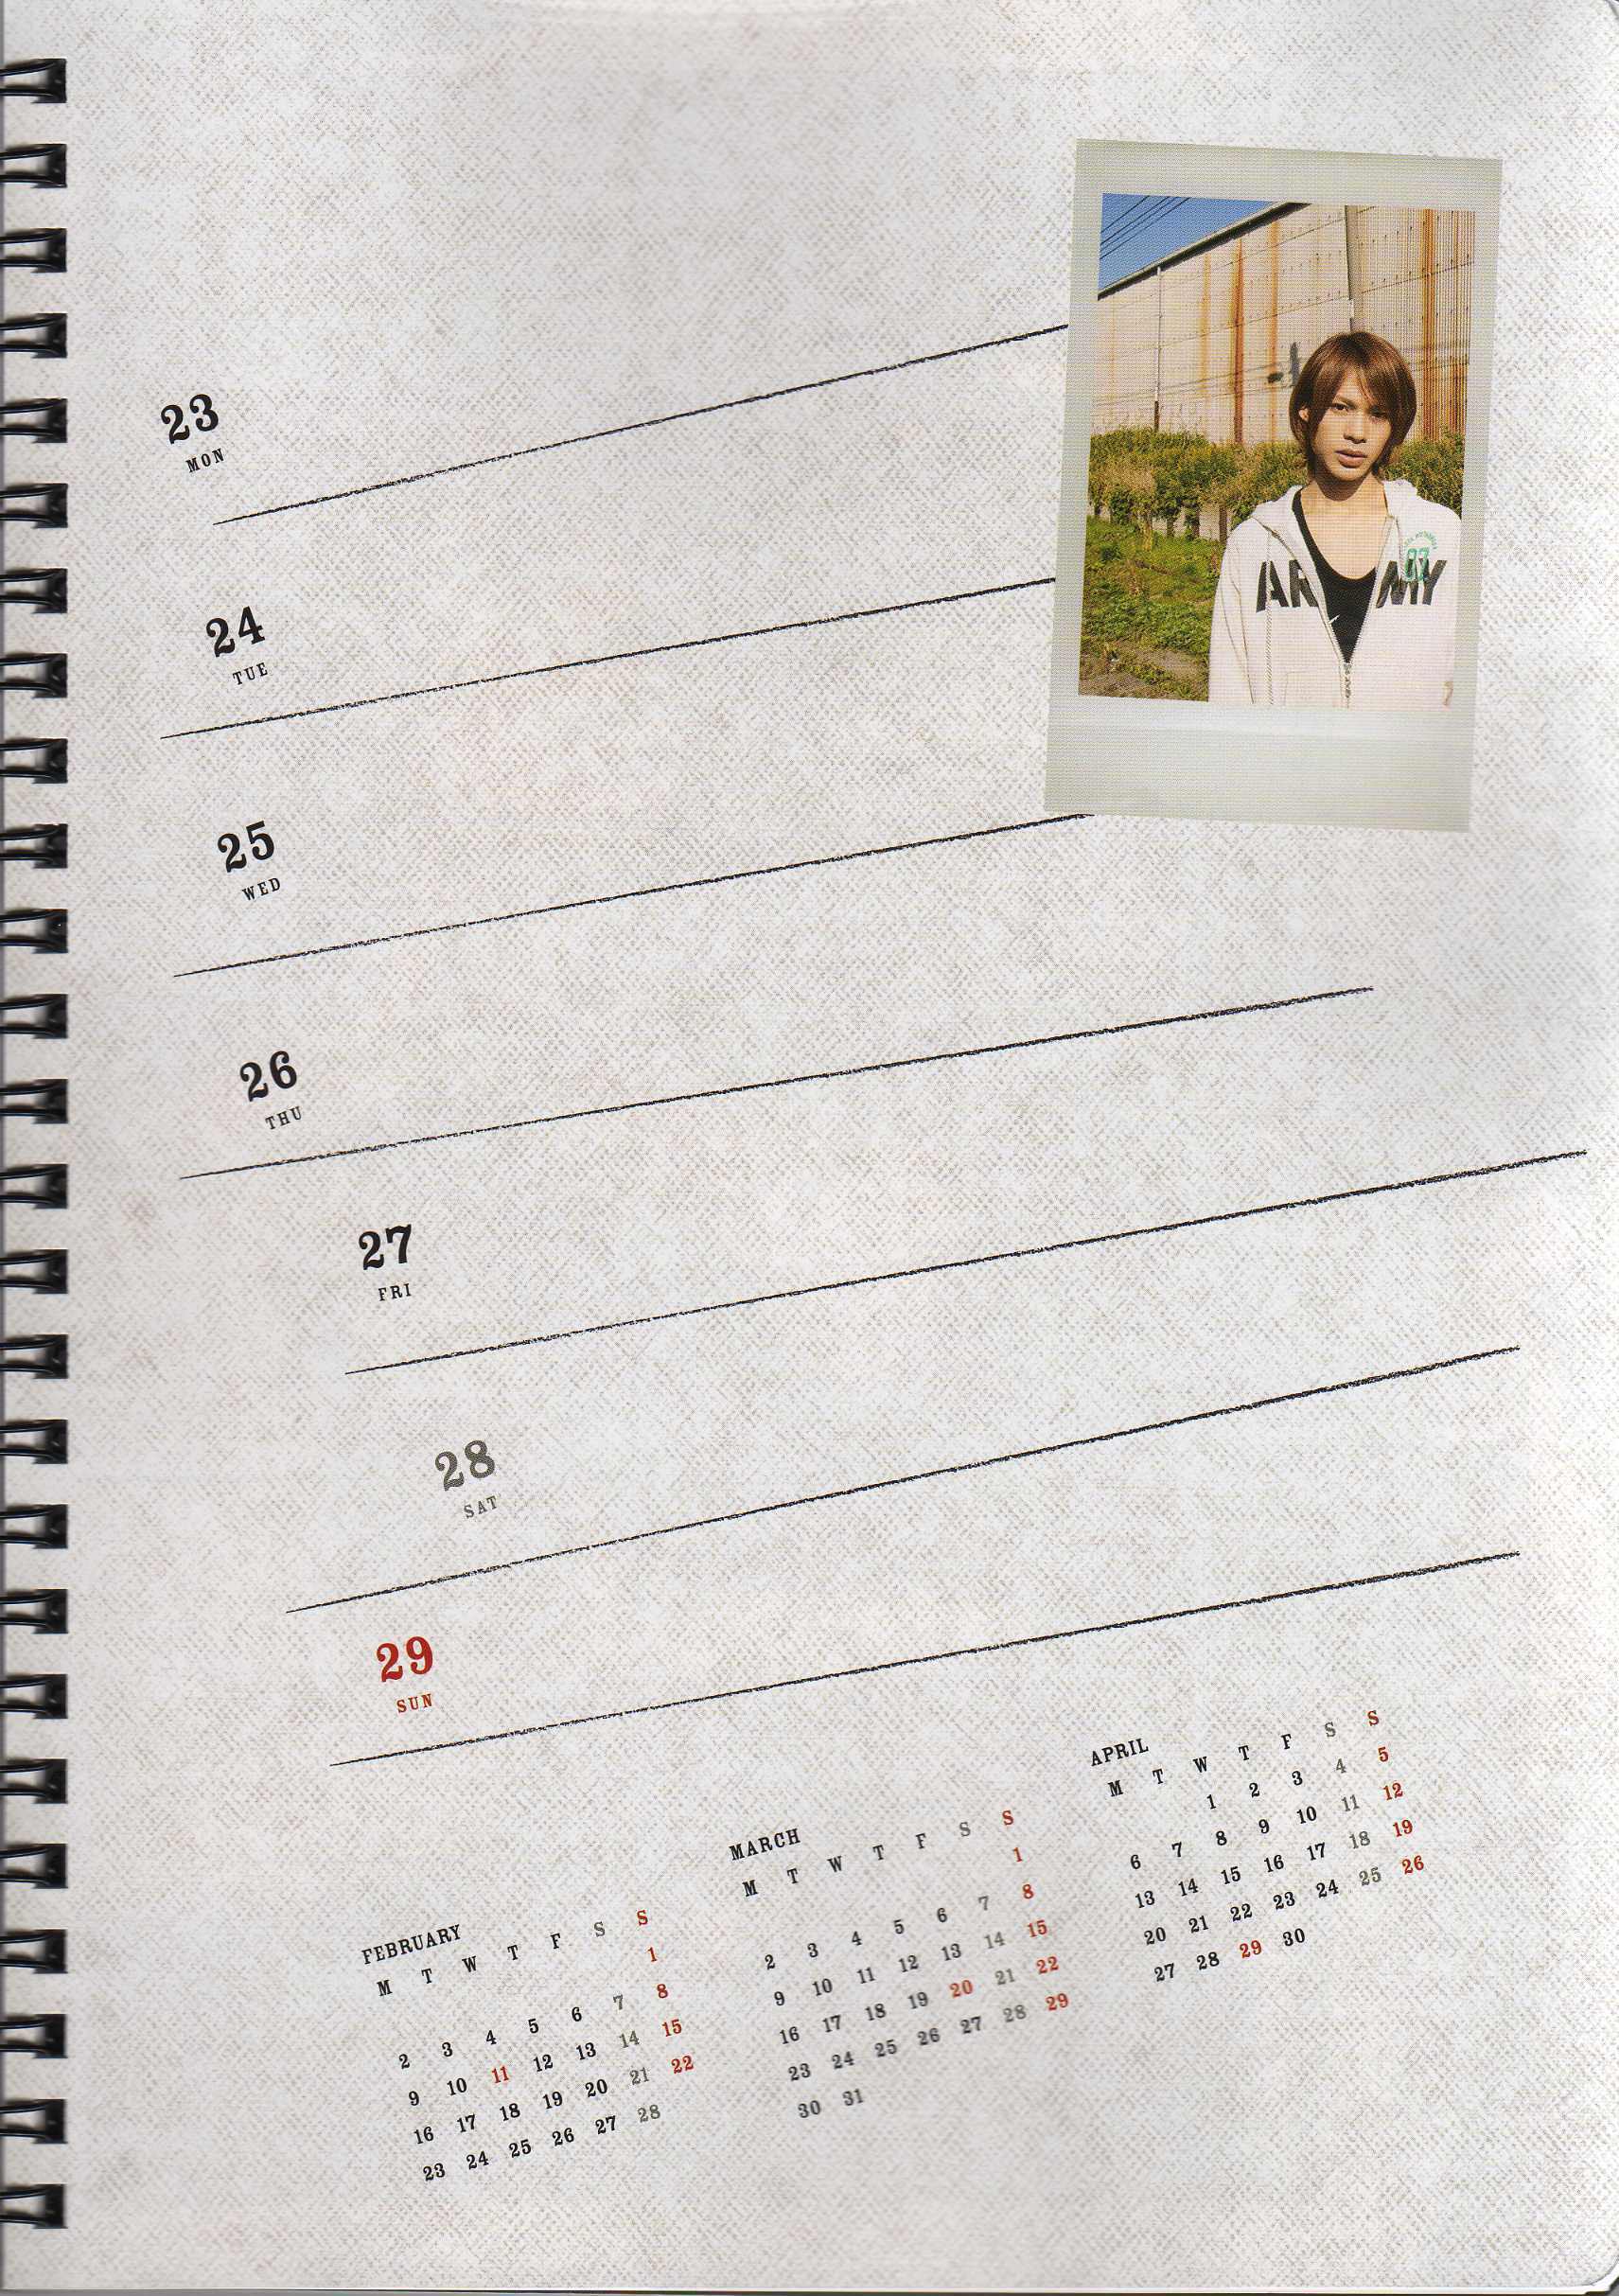 KAT-TUN Calendar 2008/2009